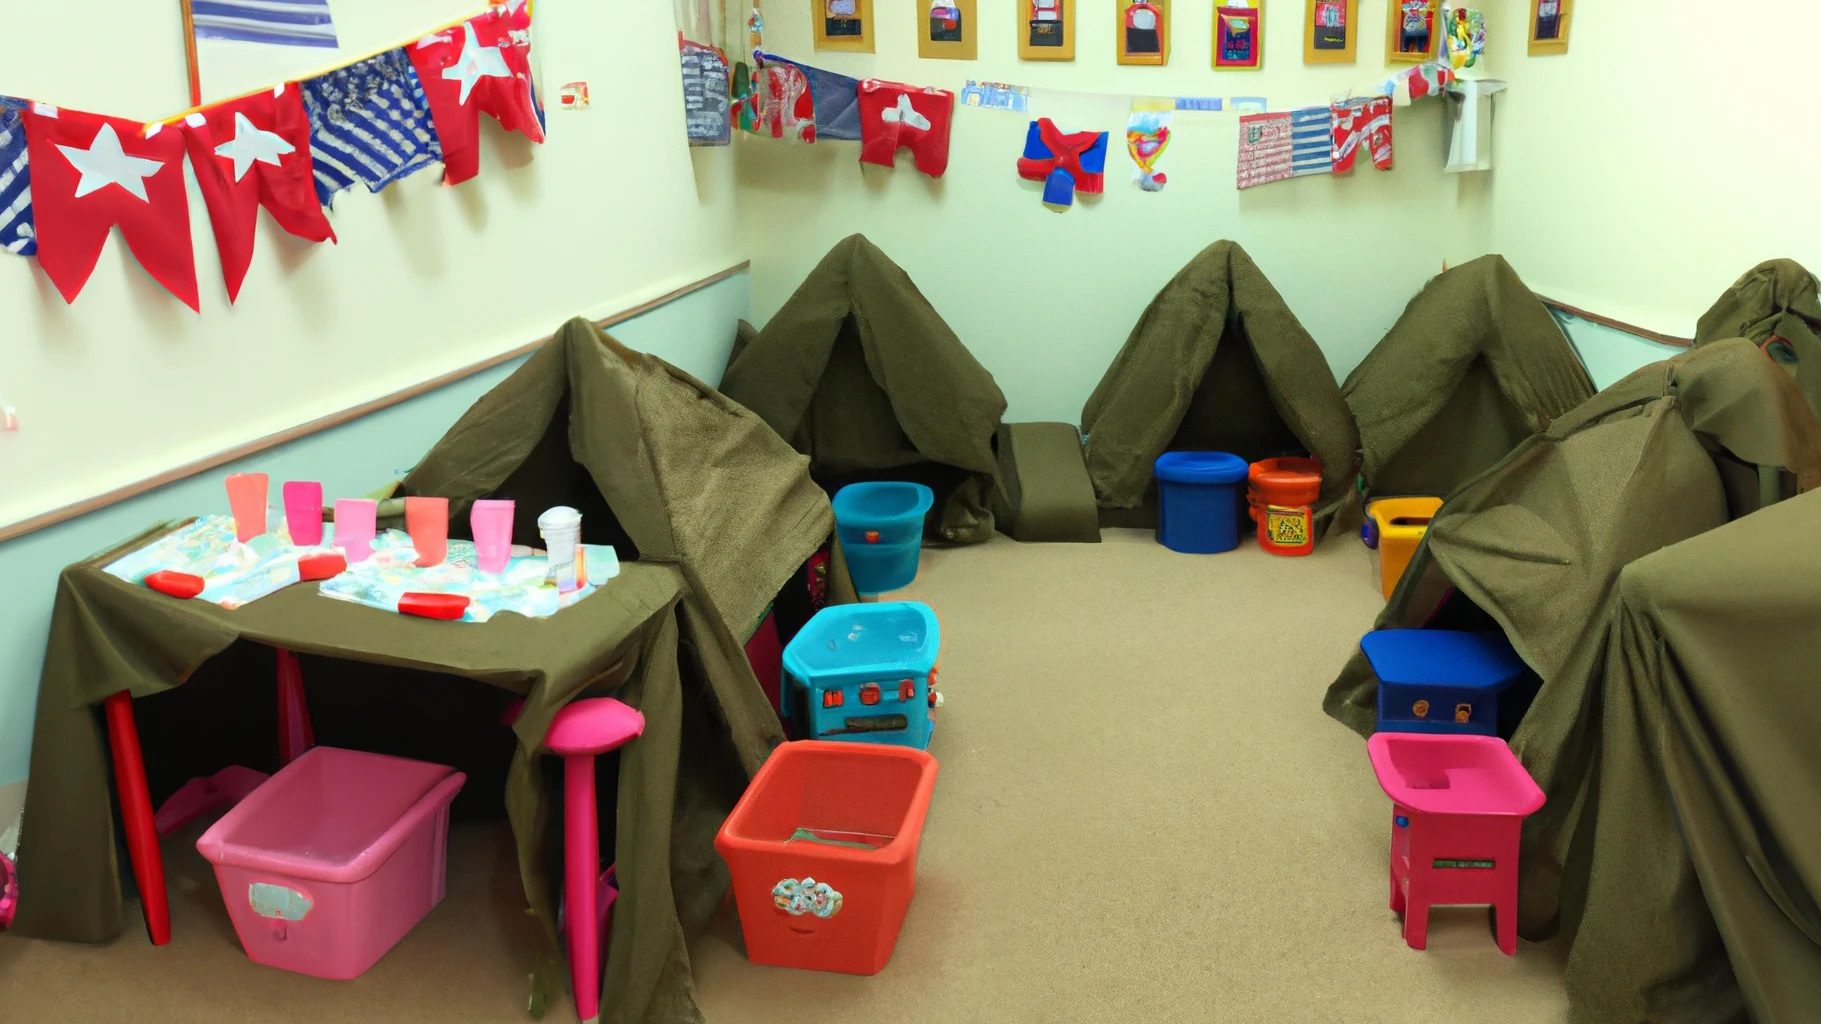 Crèche pour la garde d'enfants avec des tentes de style militaire